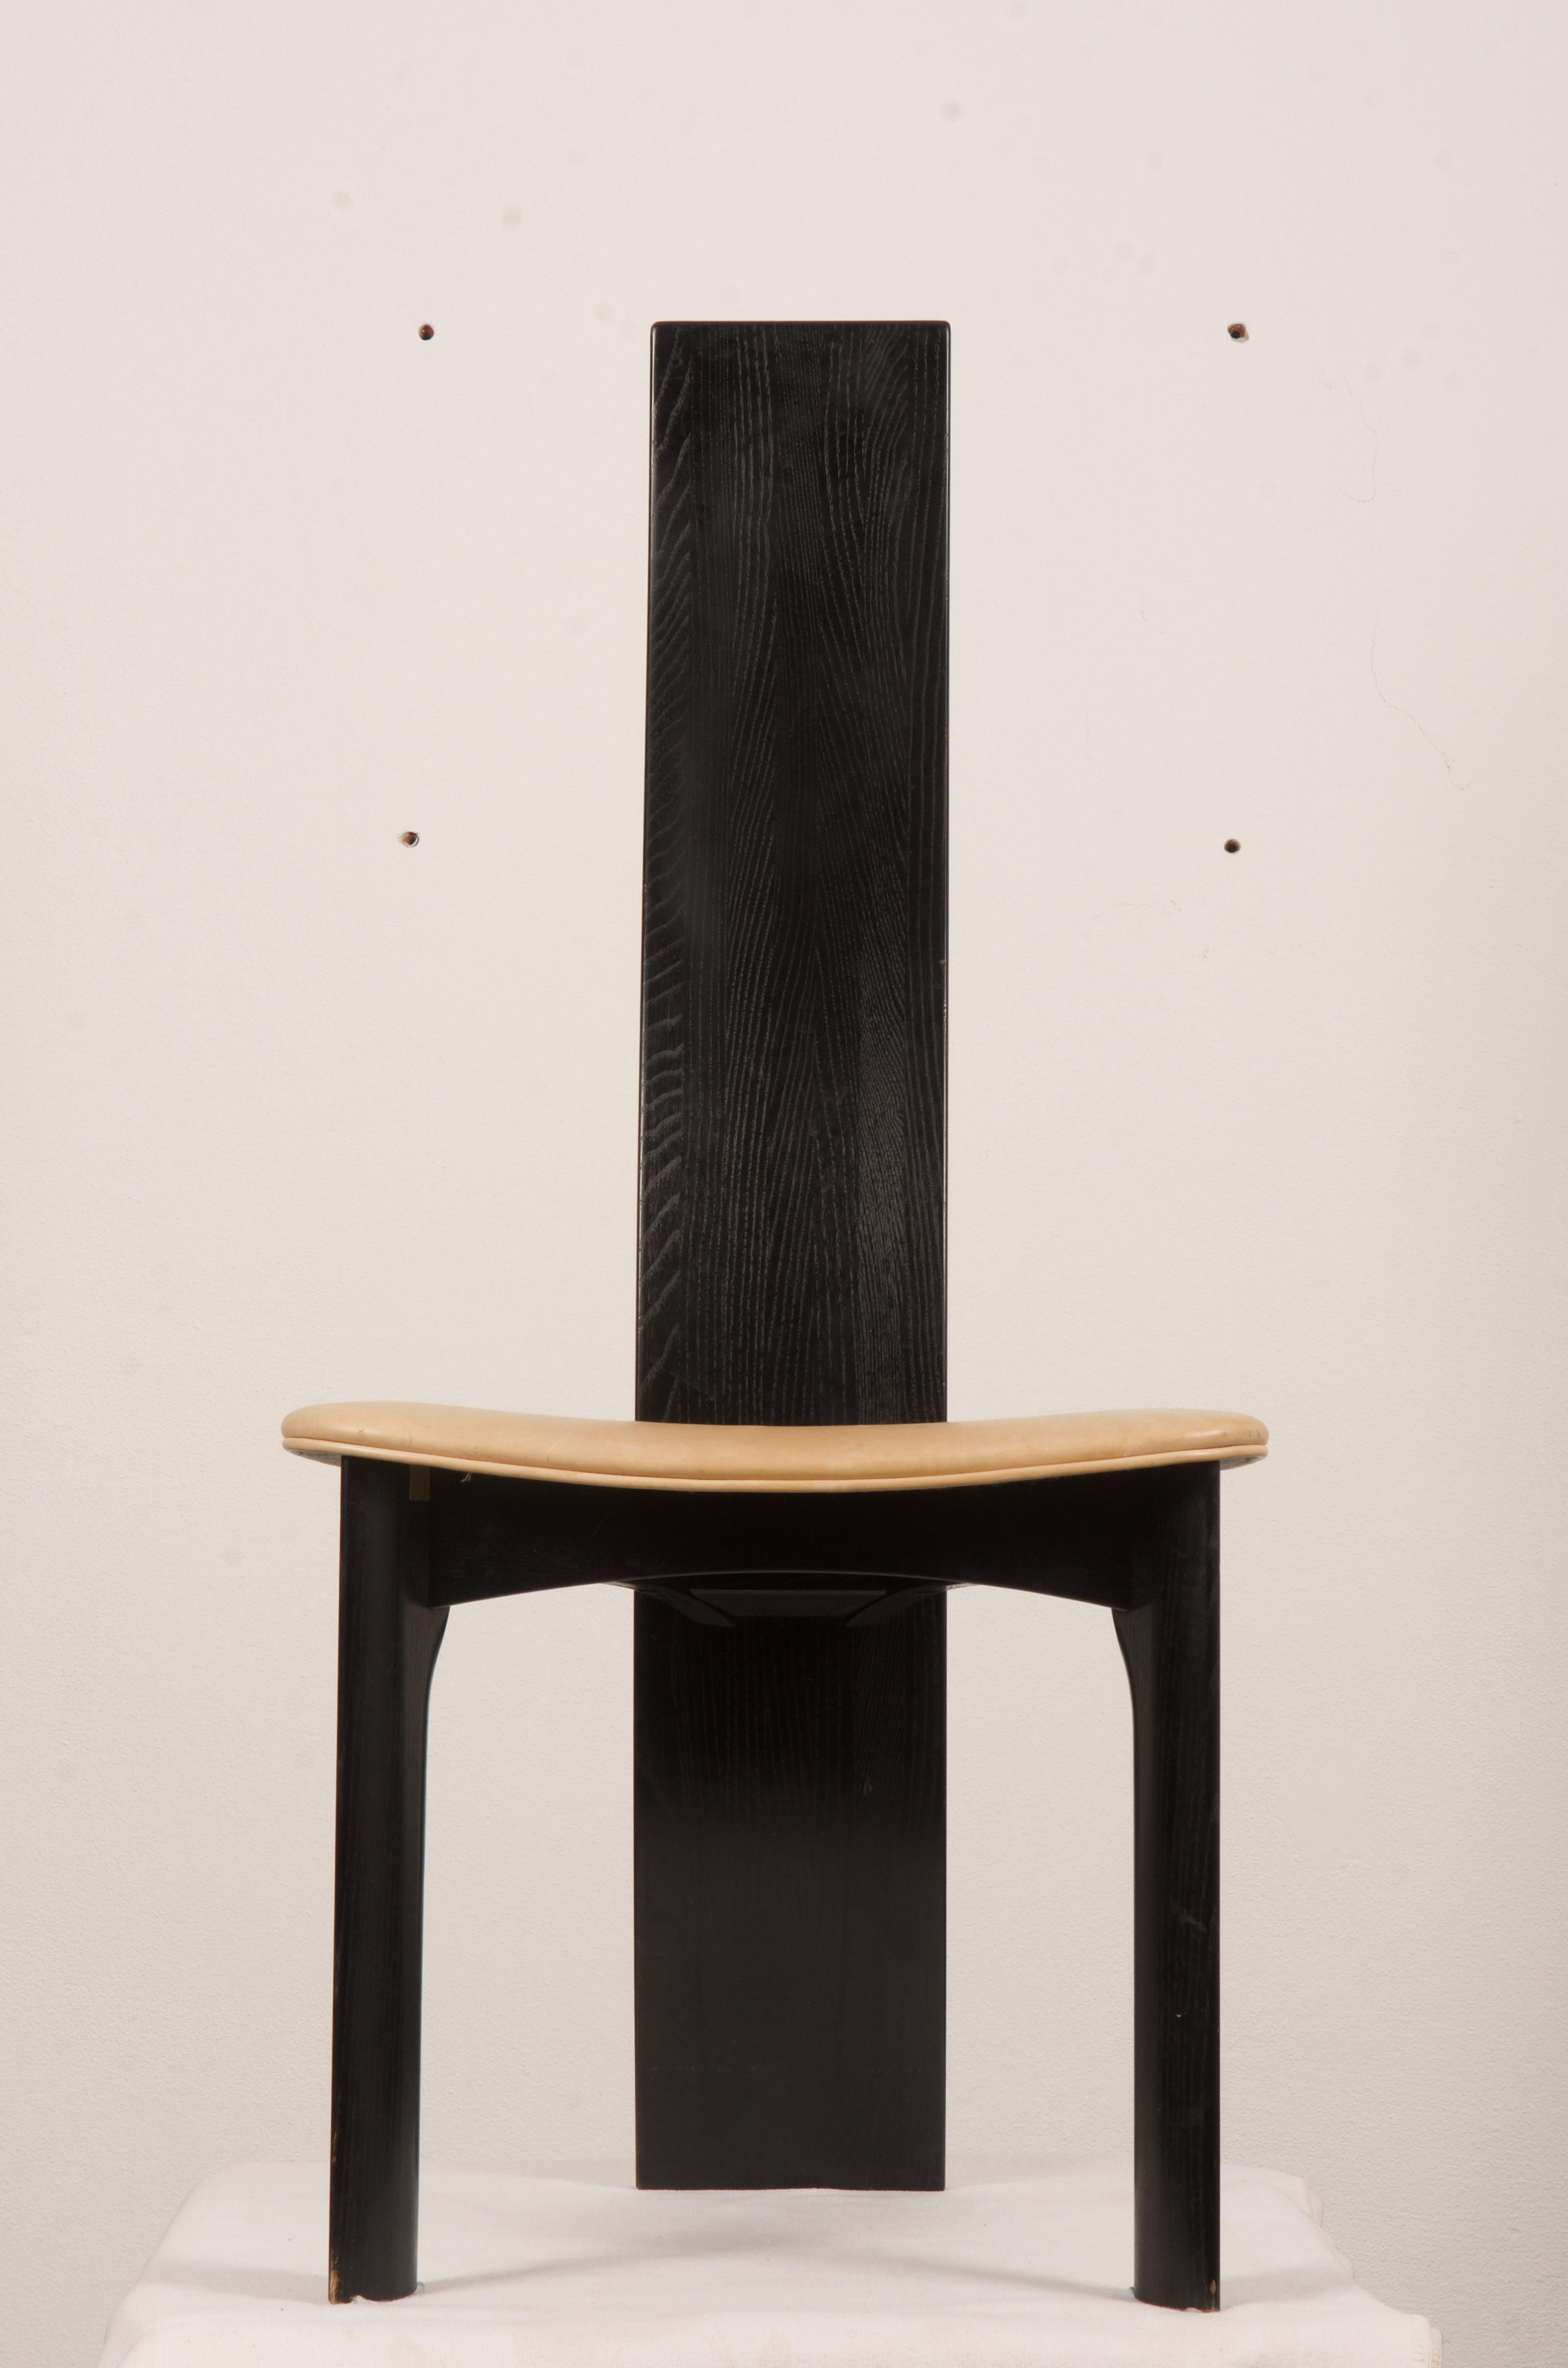 Ein Satz von acht dänischen ebonisierten Esszimmerstühlen. Entworfen 1970 von Bob und Dries van den Berghe für Tranekær Mobler. 
Ledersitze mit altersbedingten Abnutzungserscheinungen.
Ein weiterer Satz von sechs mit schwarzem Sitz in einem